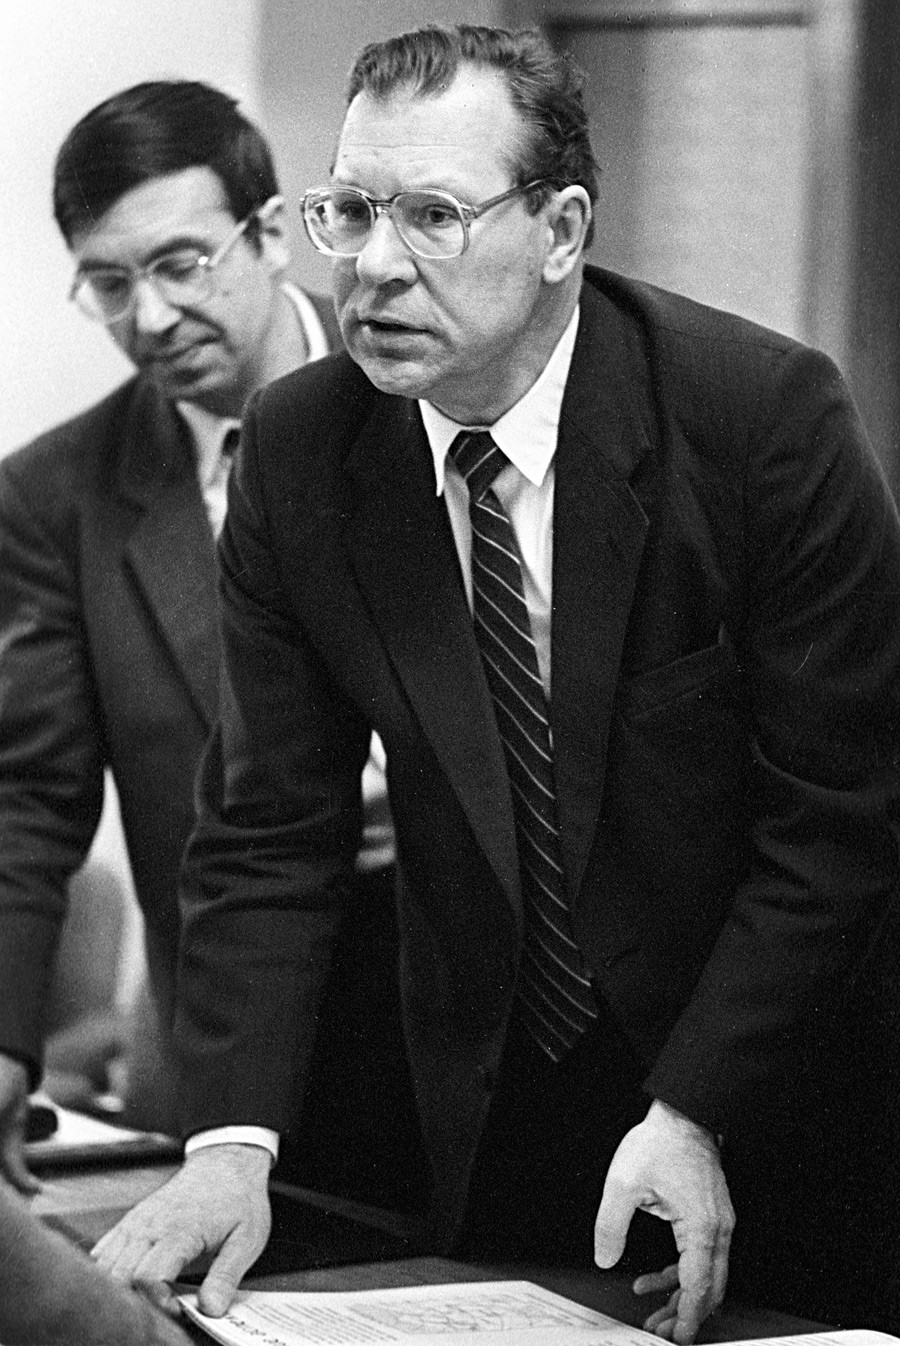 Први заменик директора Института за нуклеарну енергију „Курчатов“, академик Валериј Легасов (десно) који је учествовао у истраживању узрока хаварије на Чернобиљској нуклеарној електрани 26. априла 1986. године.